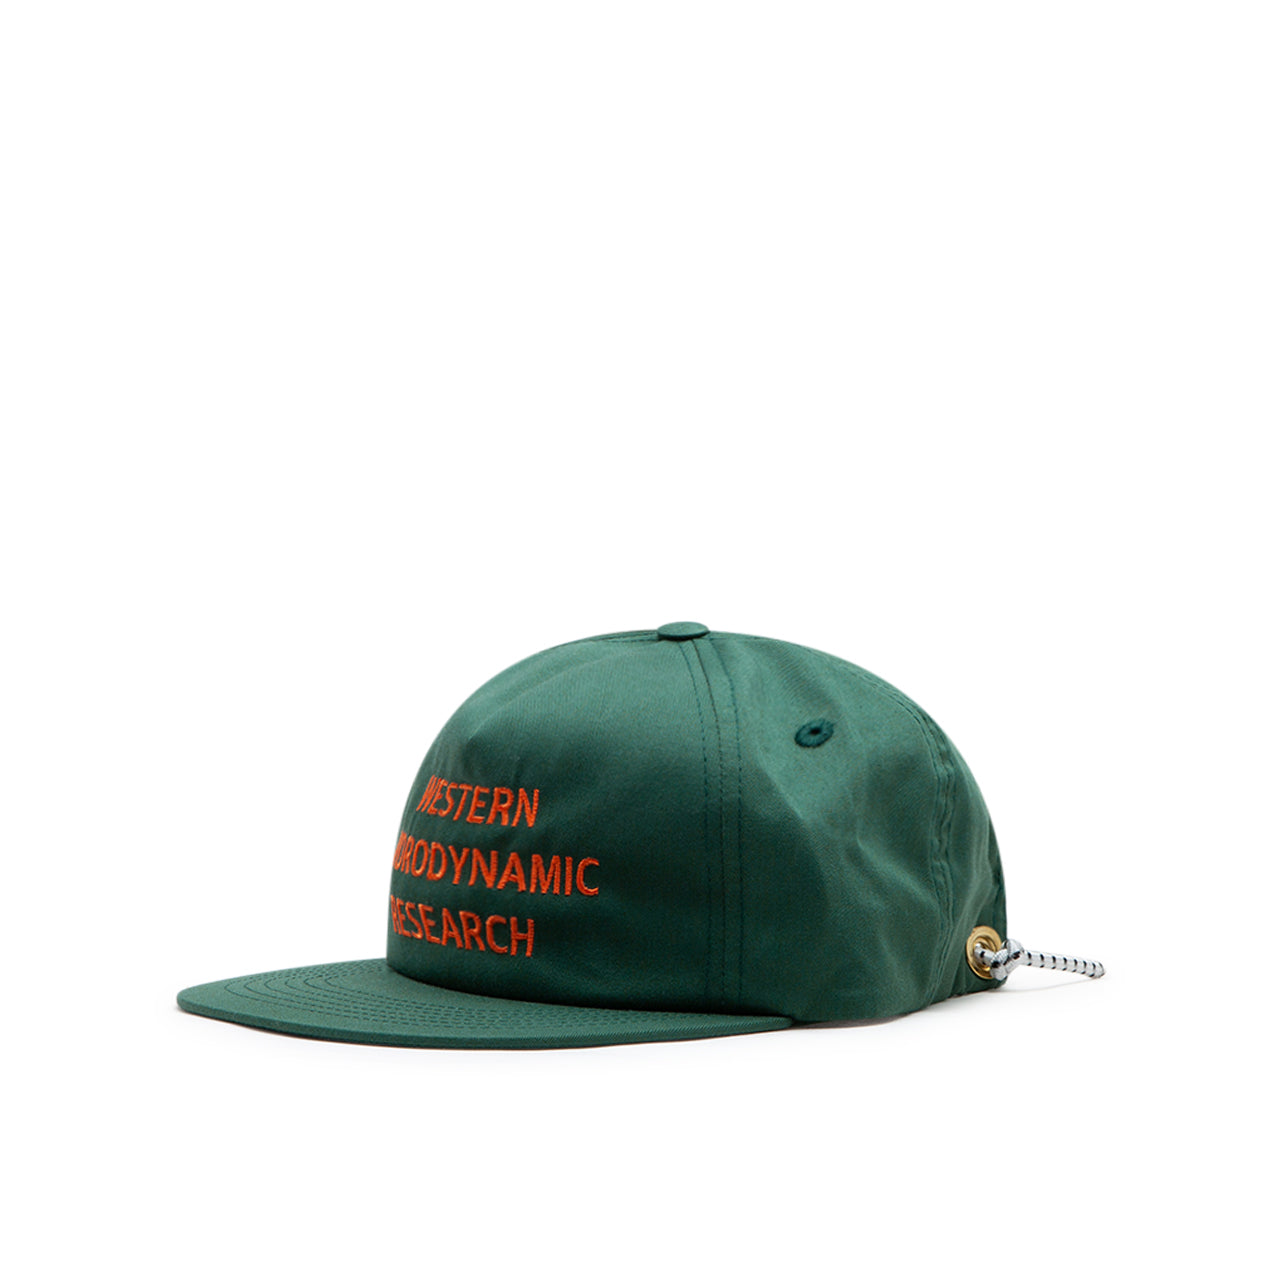 Western Hydrodynamic Research Promotional Hat (Green) MWHR23FW4001-U-KHK -  Allike Store